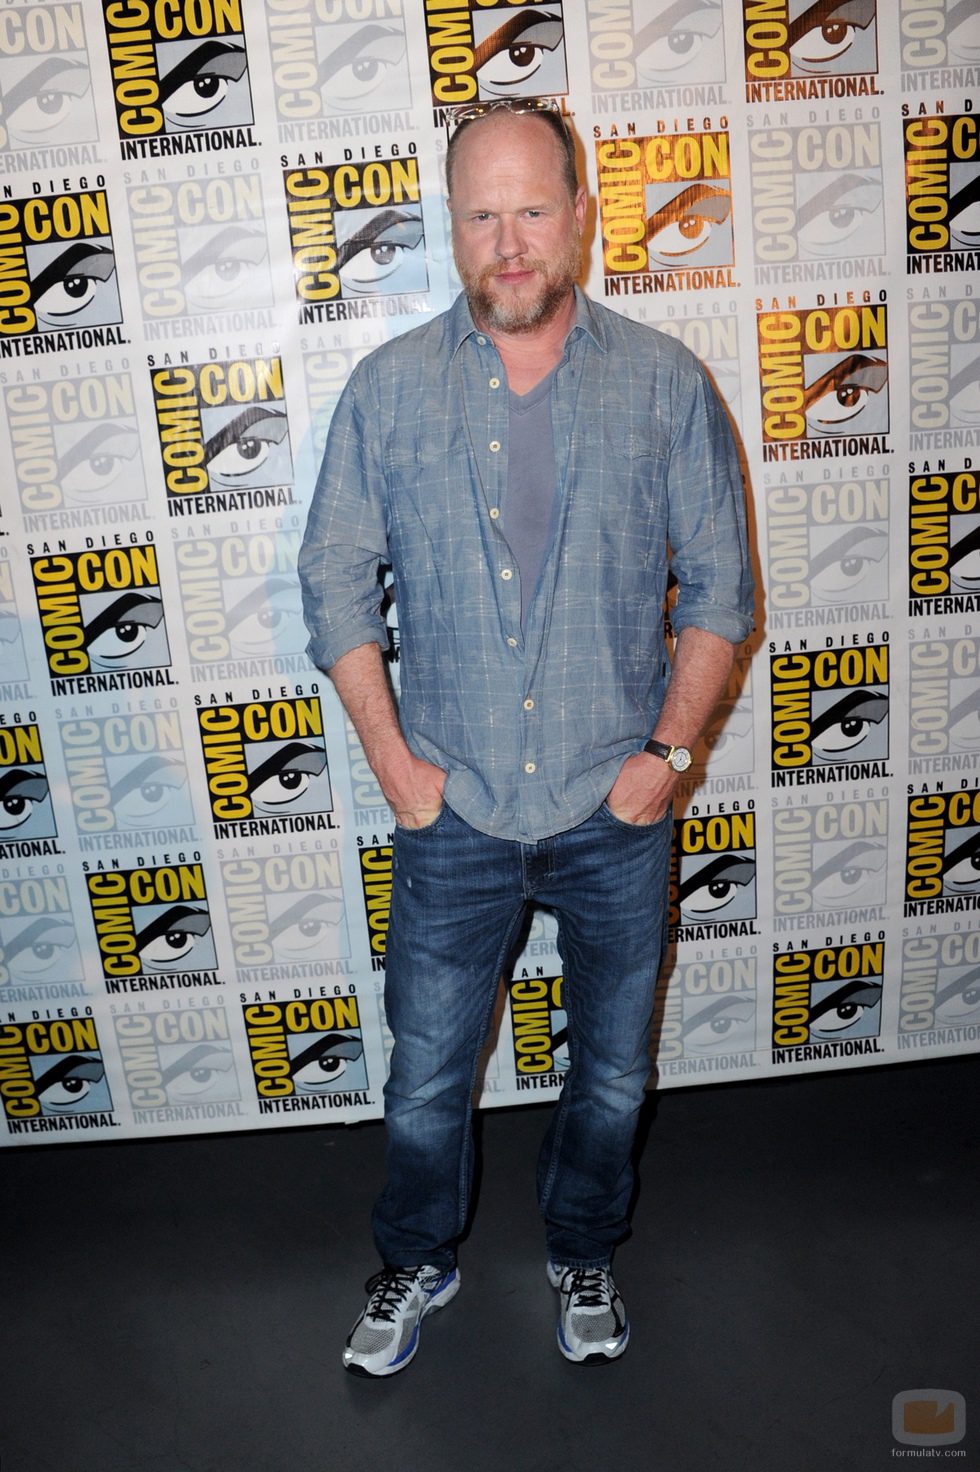 Joss Whedon de visita en la 'Comic Con'